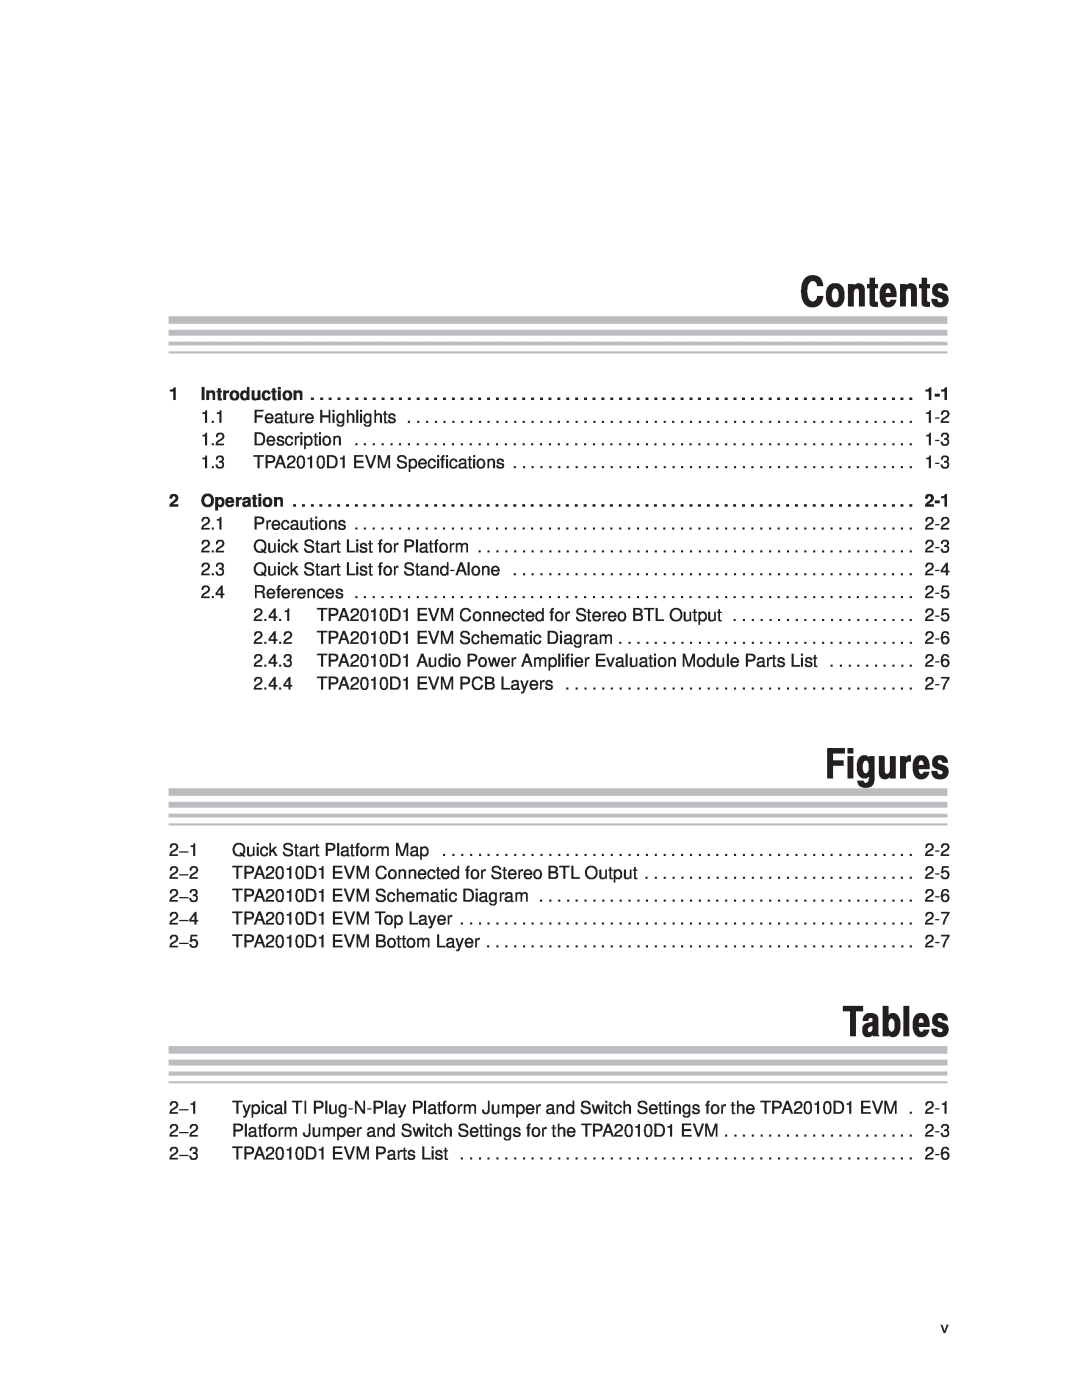 Texas Instruments 2004 manual Contents, Figures, Tables 